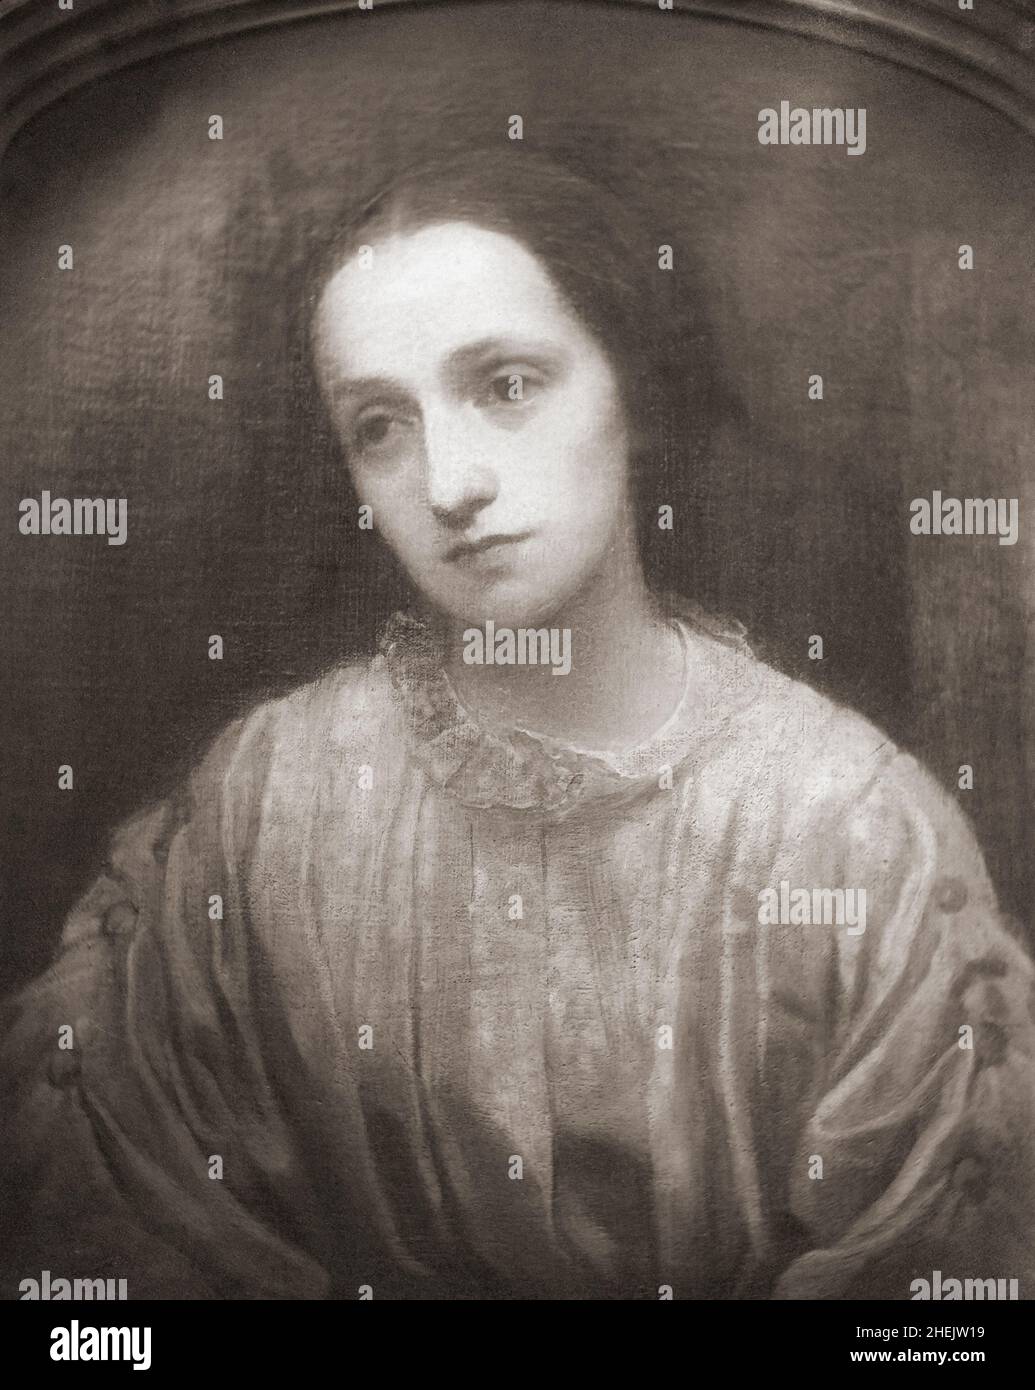 Die britische Fotografin Julia Margaret Cameron, 1815 - 1879. Nach einer Schwarz-Weiß-Fotografie eines Gemäldes, das um 1850 vom britischen Künstler George Frederic Watts geschaffen wurde. Stockfoto